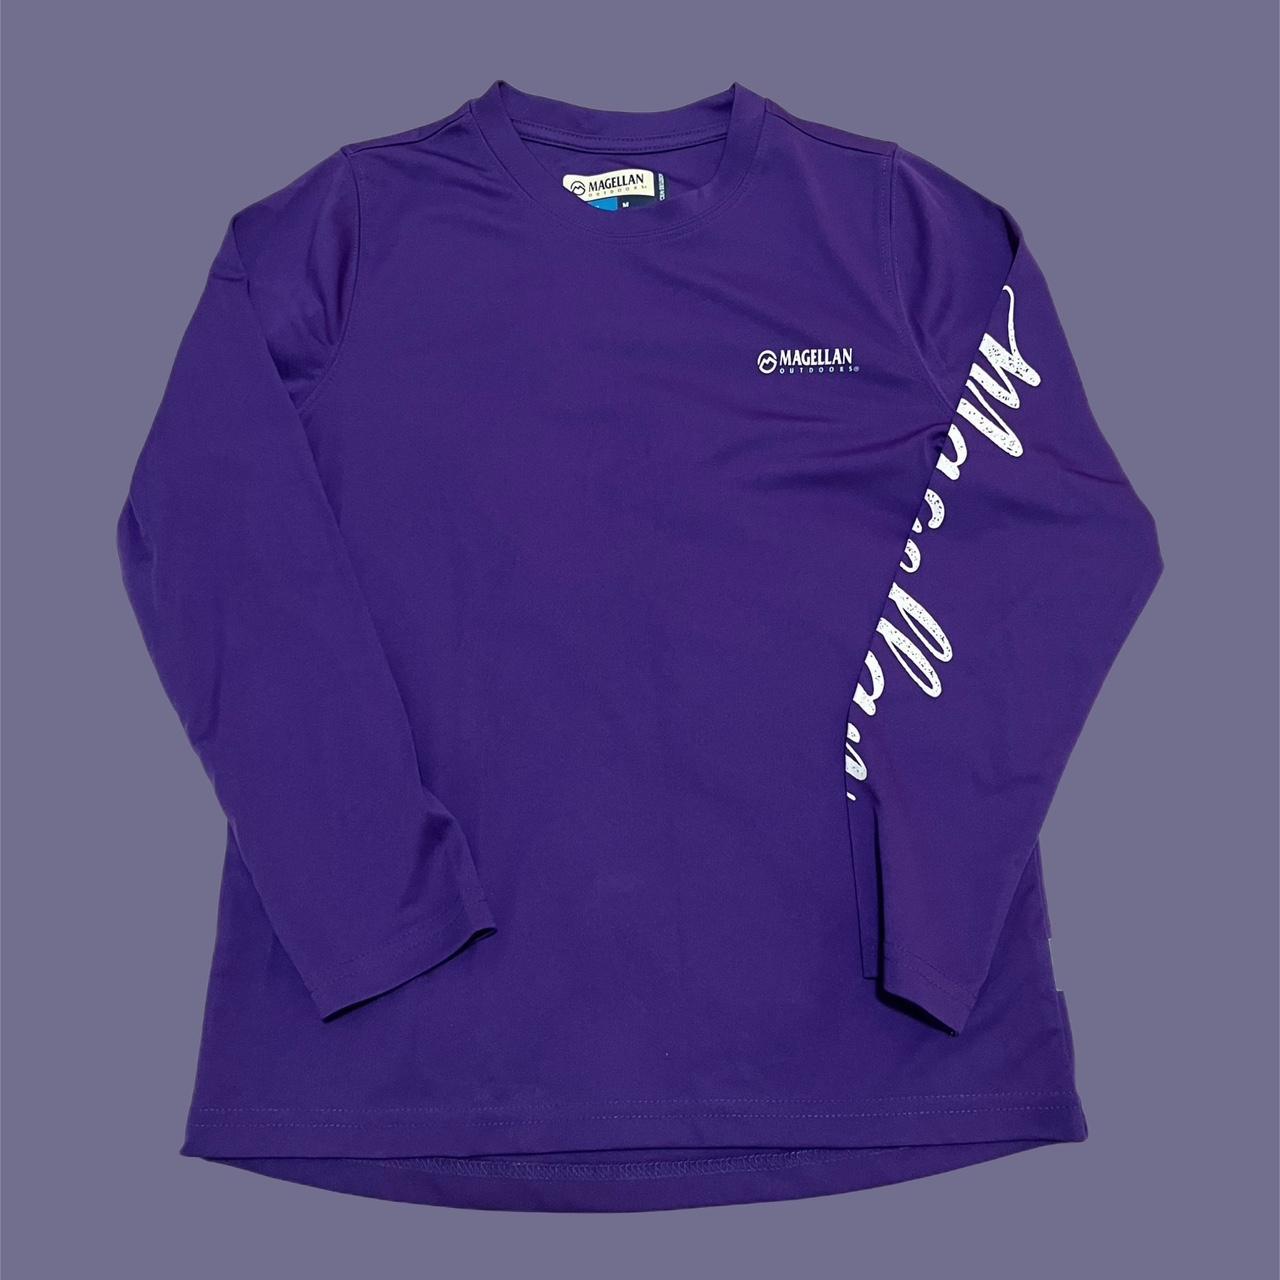 Purple Magellan Kids Fishing Shirt size: - Depop